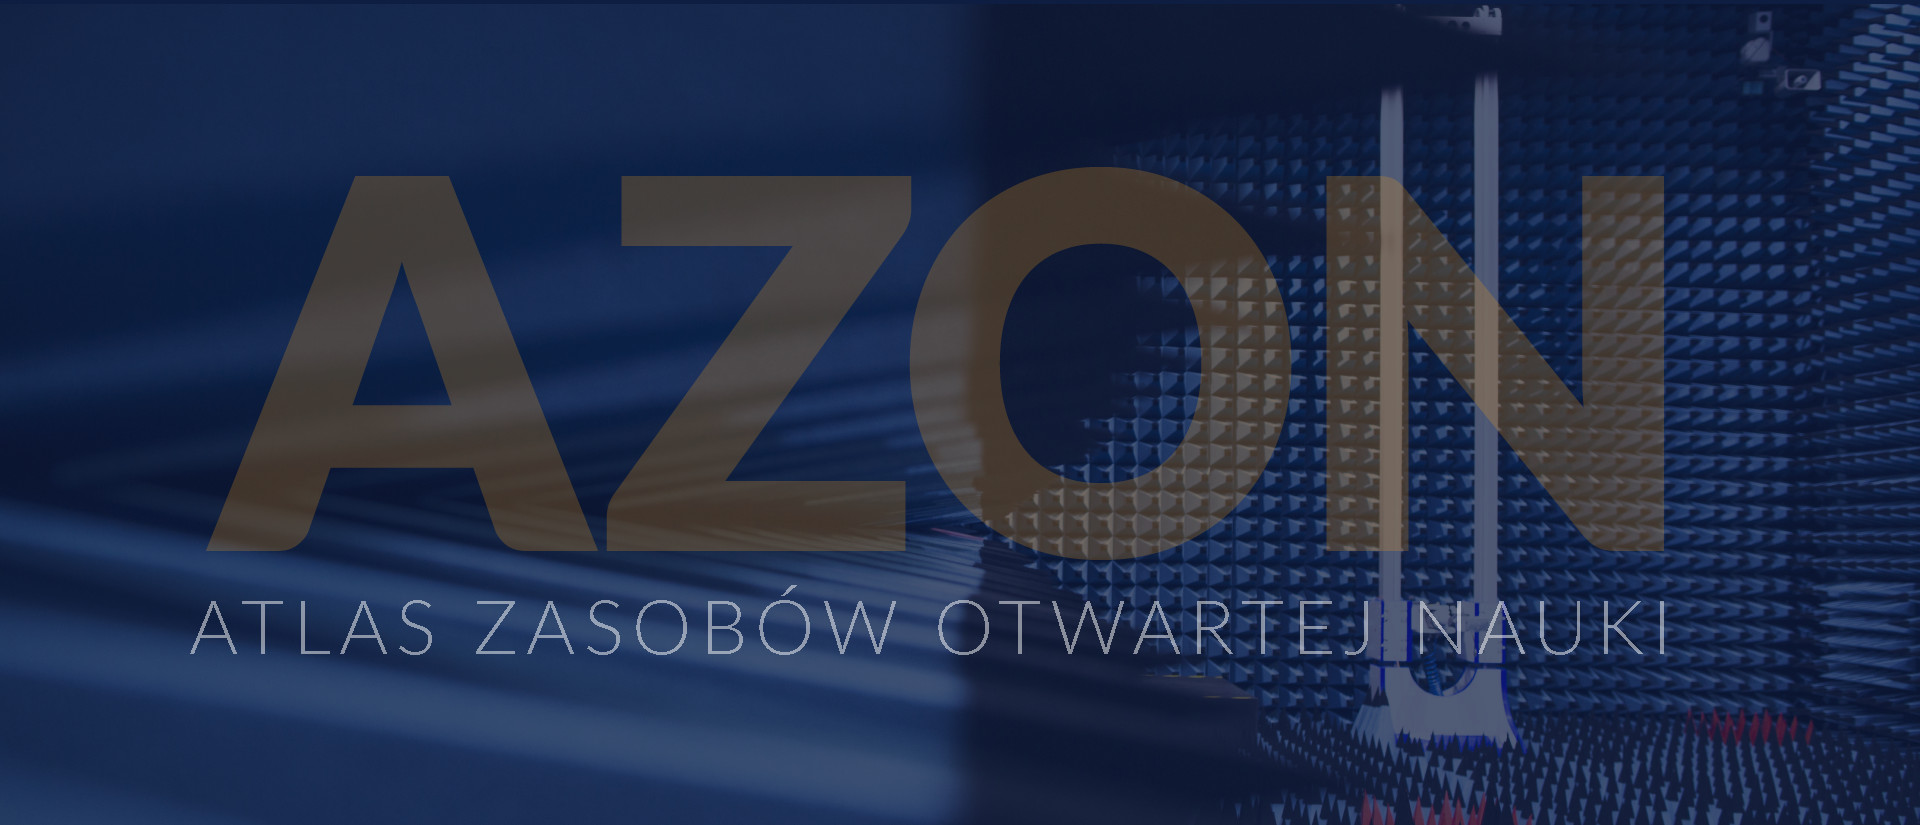 Banner: Napis AZON - Atlas Zasobów Otwartej Nauki